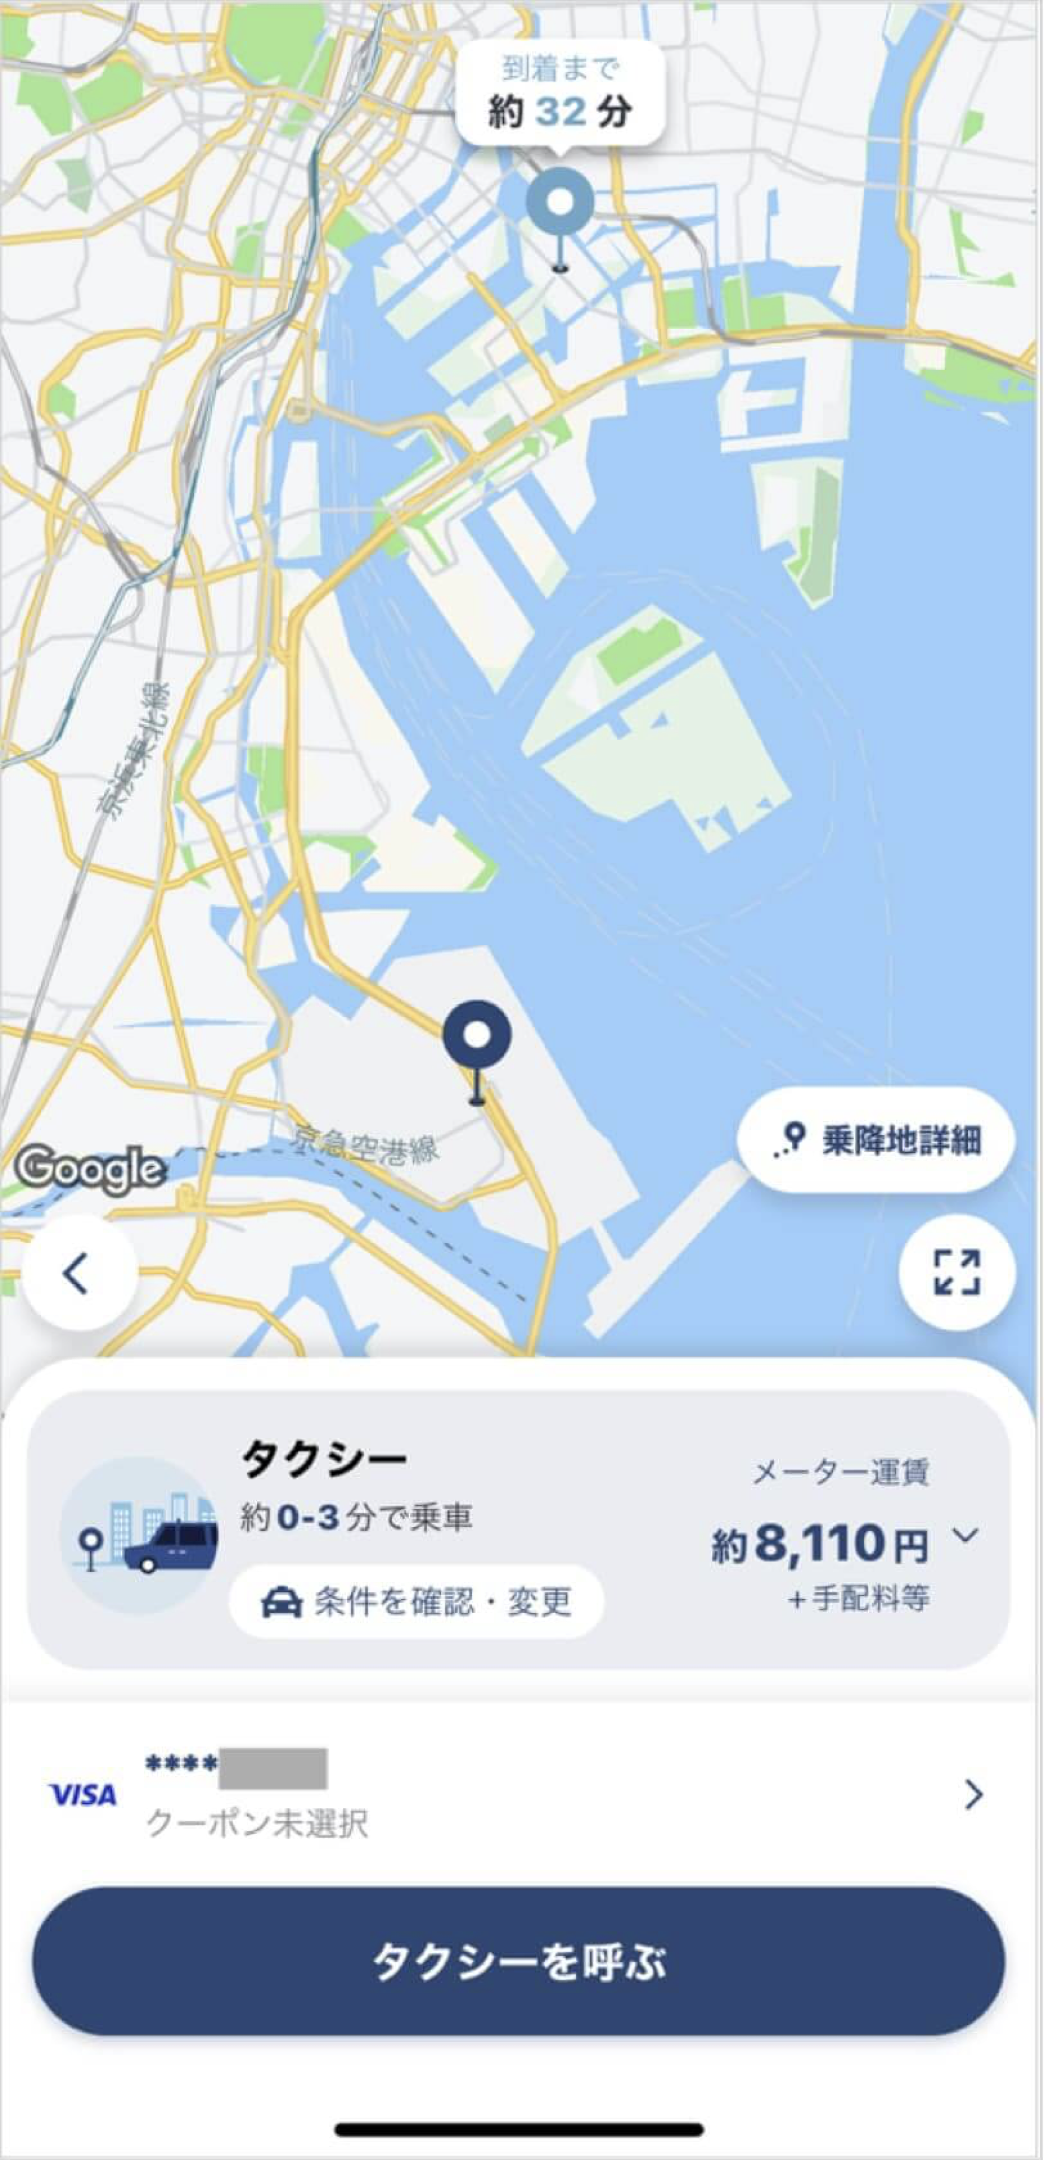 羽田空港から豊洲までのタクシー料金・所要時間まとめ